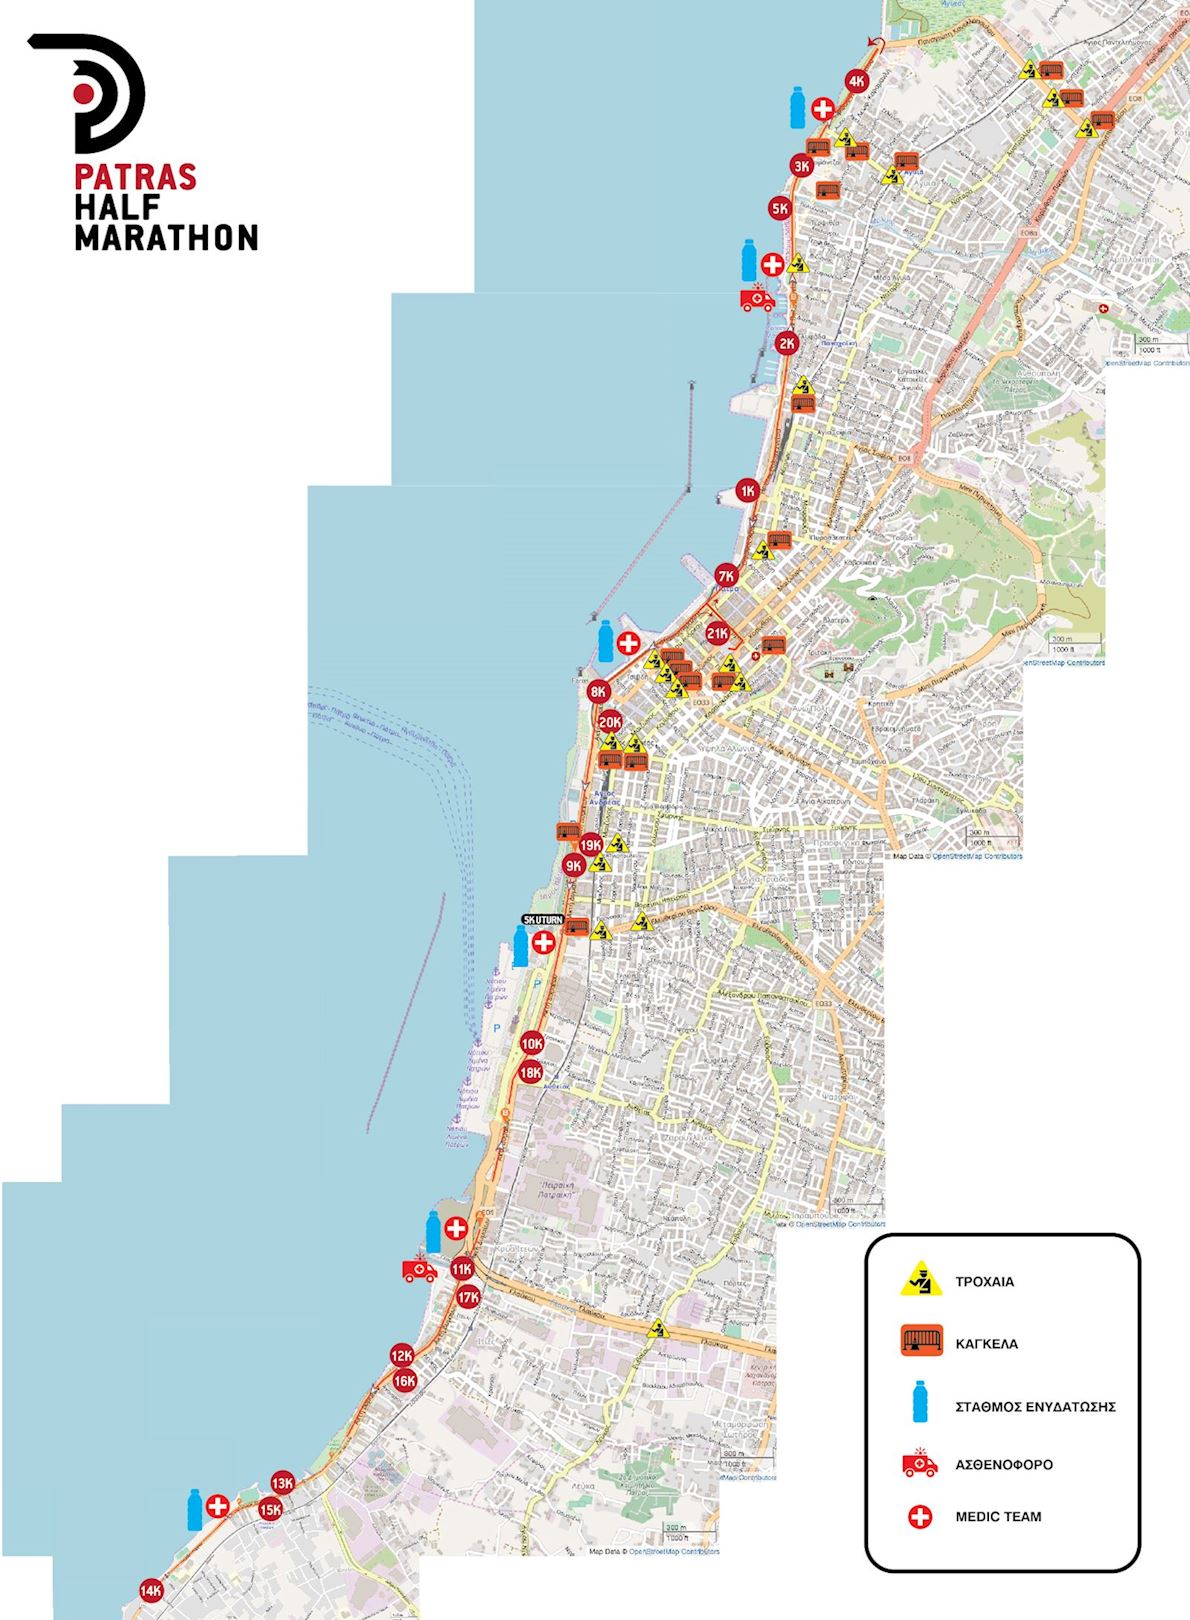 Patras Half Marathon ITINERAIRE